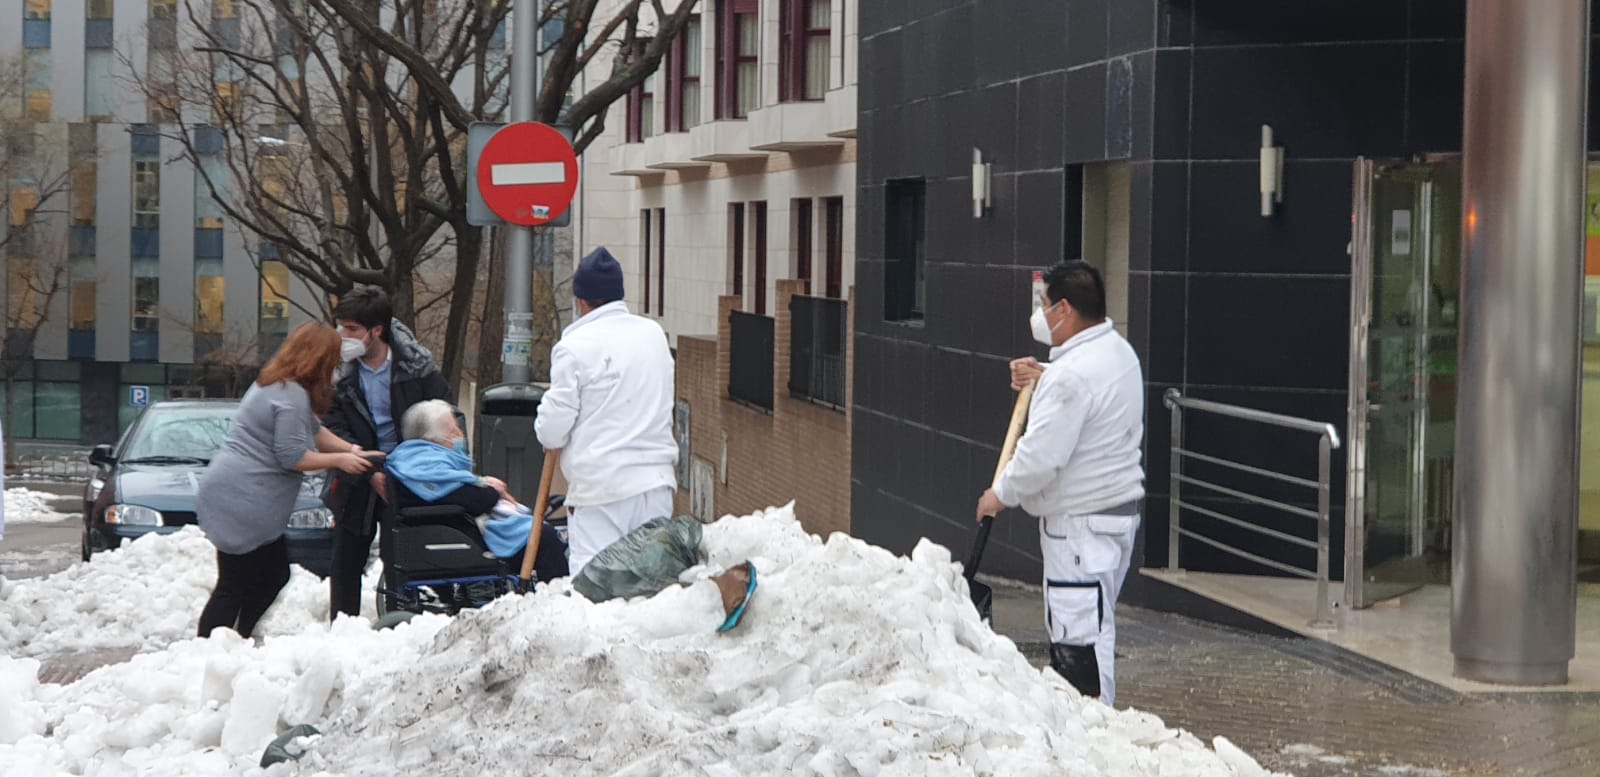 Explosión en Madrid: Los mayores de la residencia pegada al edificio, a salvo